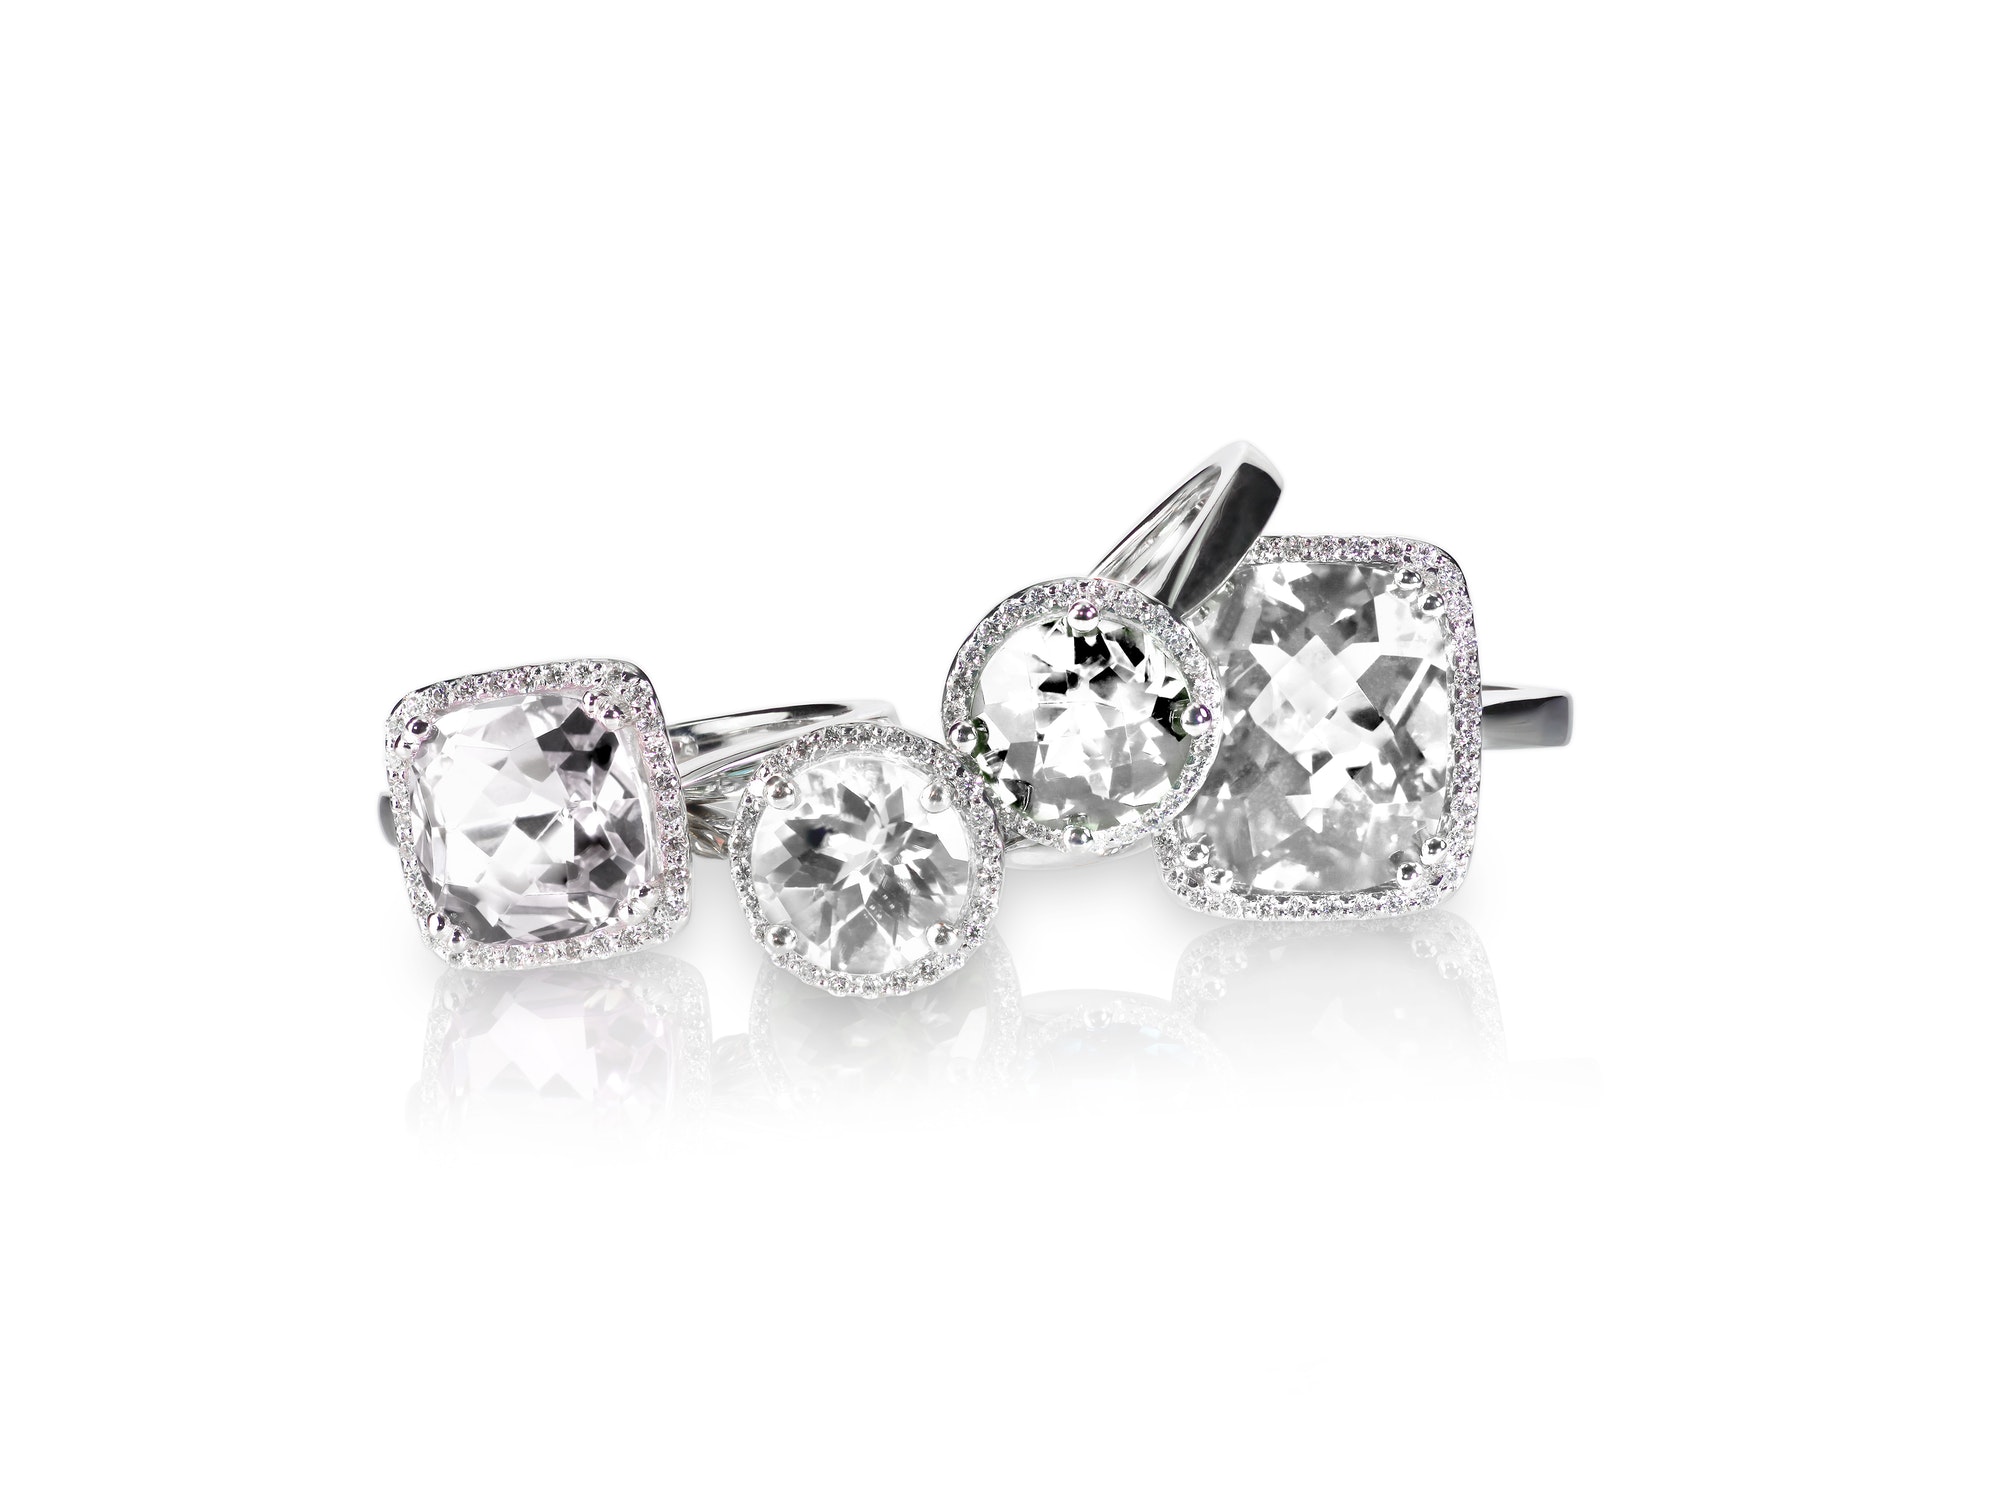 set-of-rings-gemstone-fine-jewelry-group-stack-or-cluster-of-multiple-gemstone-diamond-rings-1-1.jpg